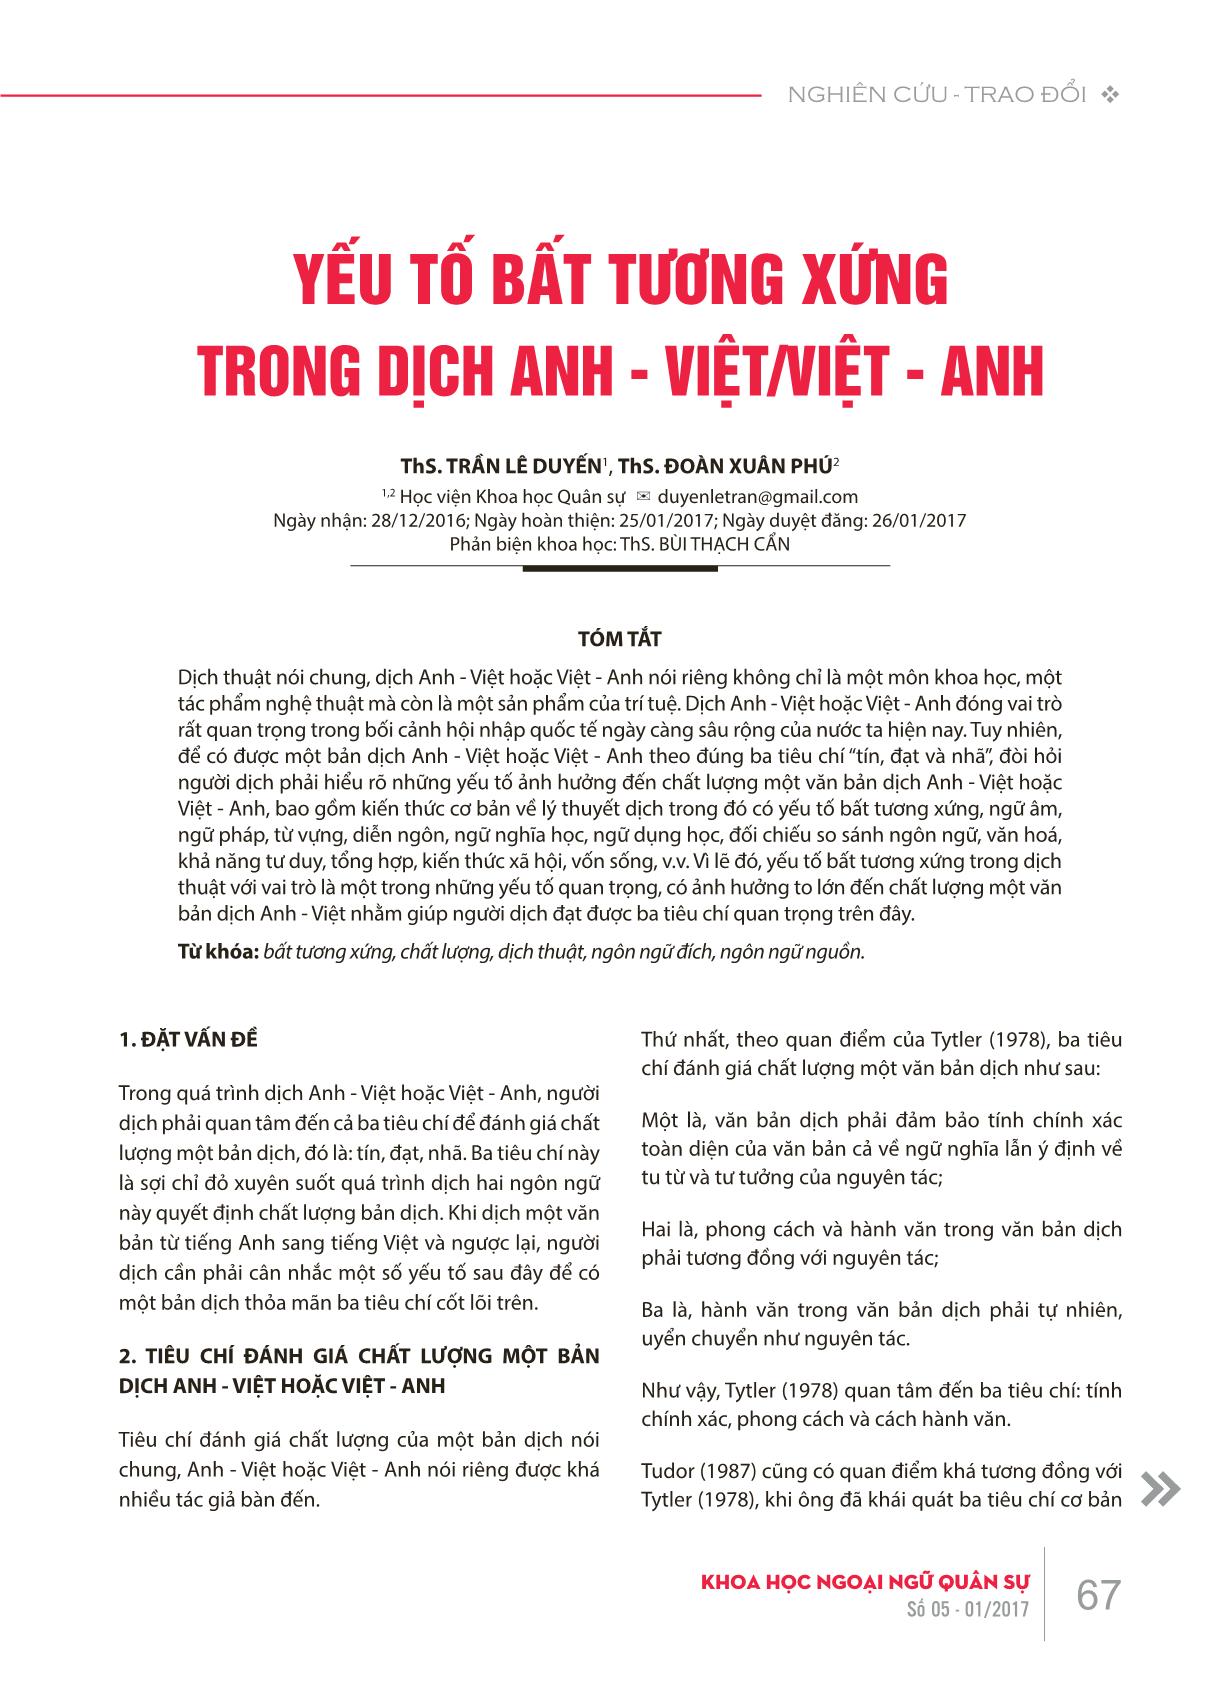 Yếu tố bất tương xứng trong dịch Anh - Việt / Việt - Anh trang 1